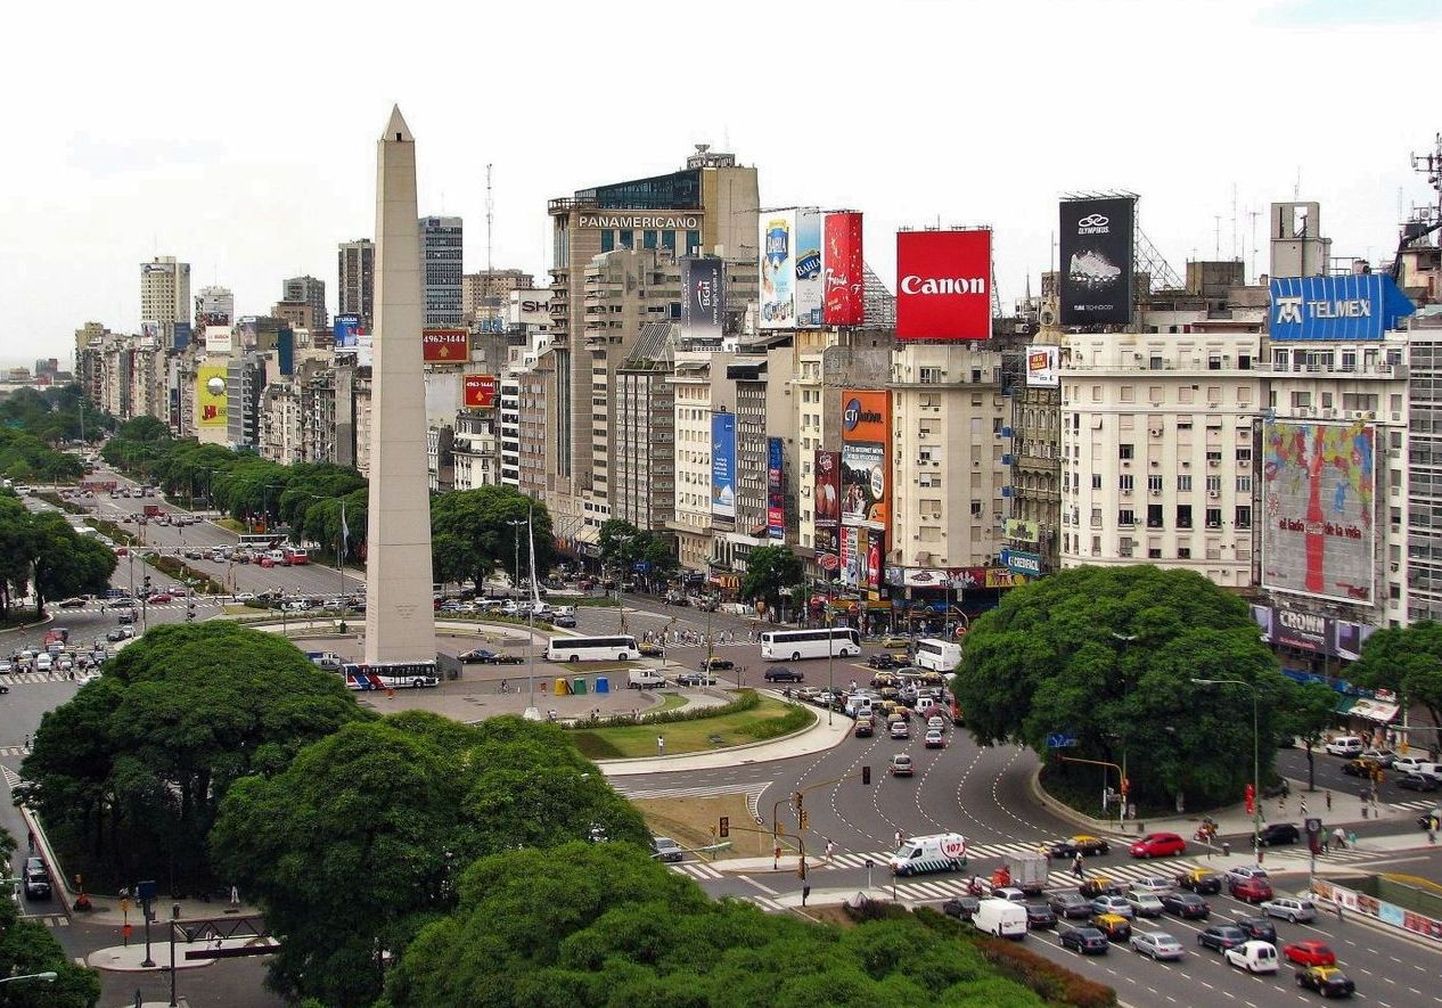 Buenos Aires Plaza de la Republica